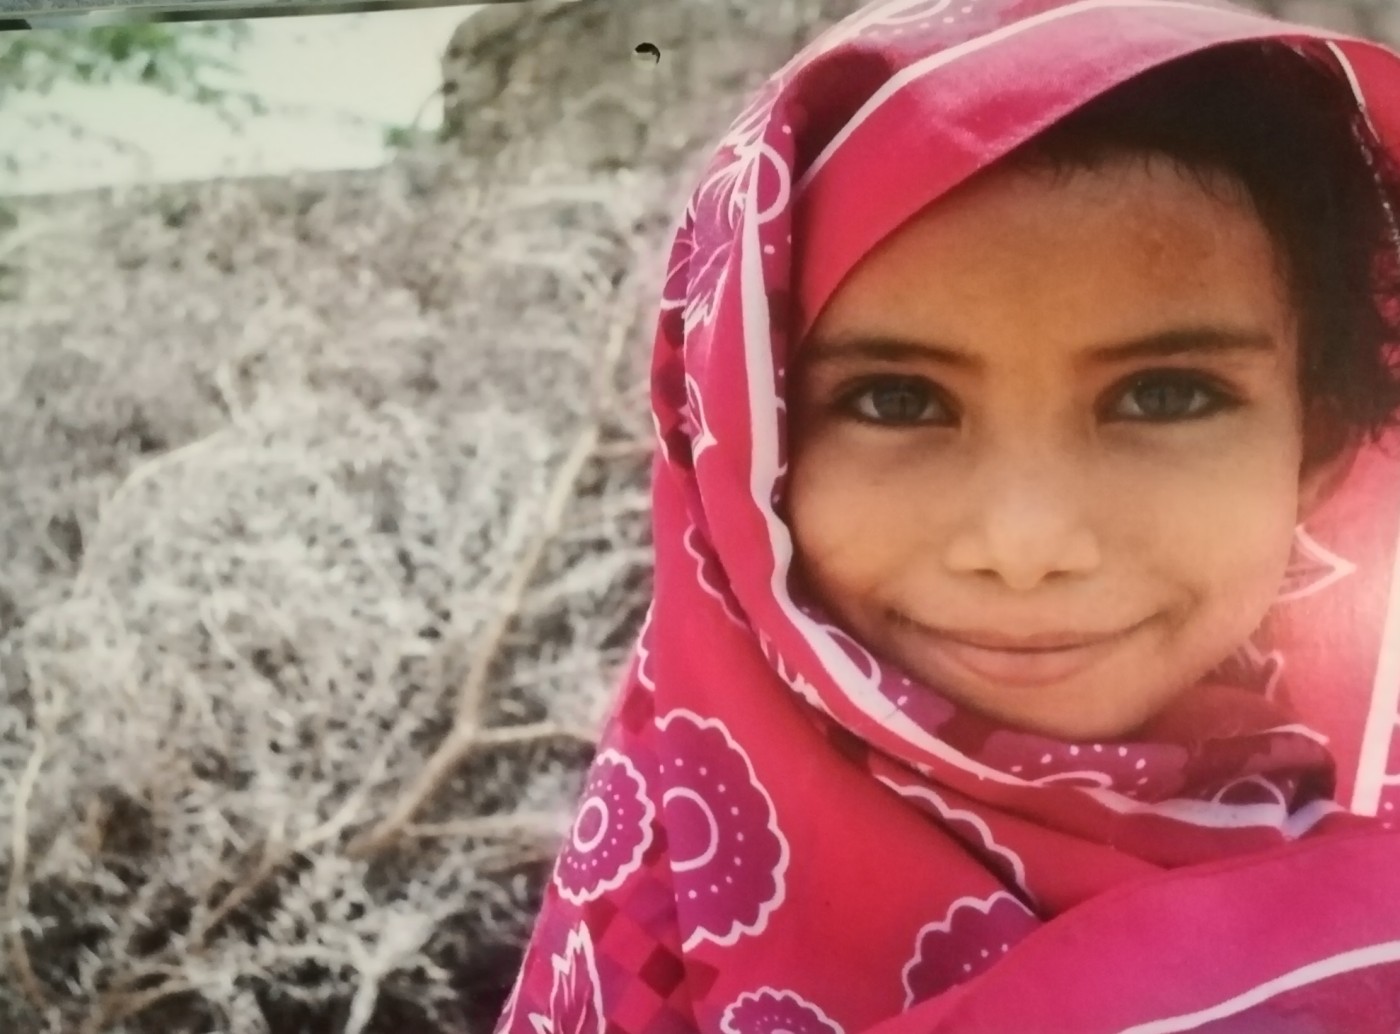 YEMEN Salma, 7 anni, sorride felice perchè è tornata a giocare con la sorellina, guarita dalla malnutrizione